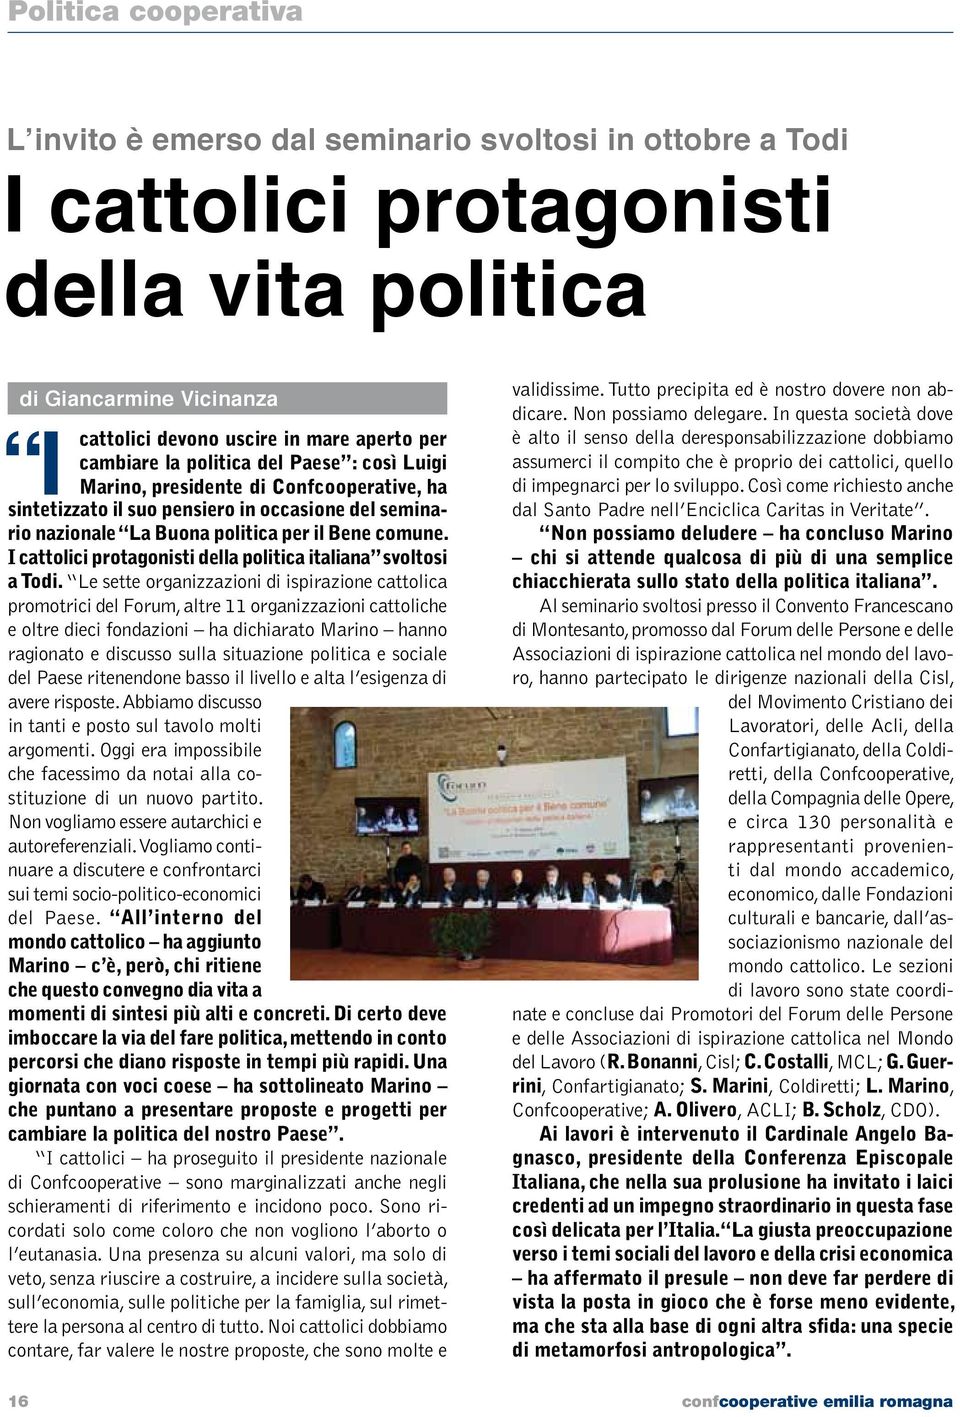 I cattolici protagonisti della politica italiana svoltosi a Todi.